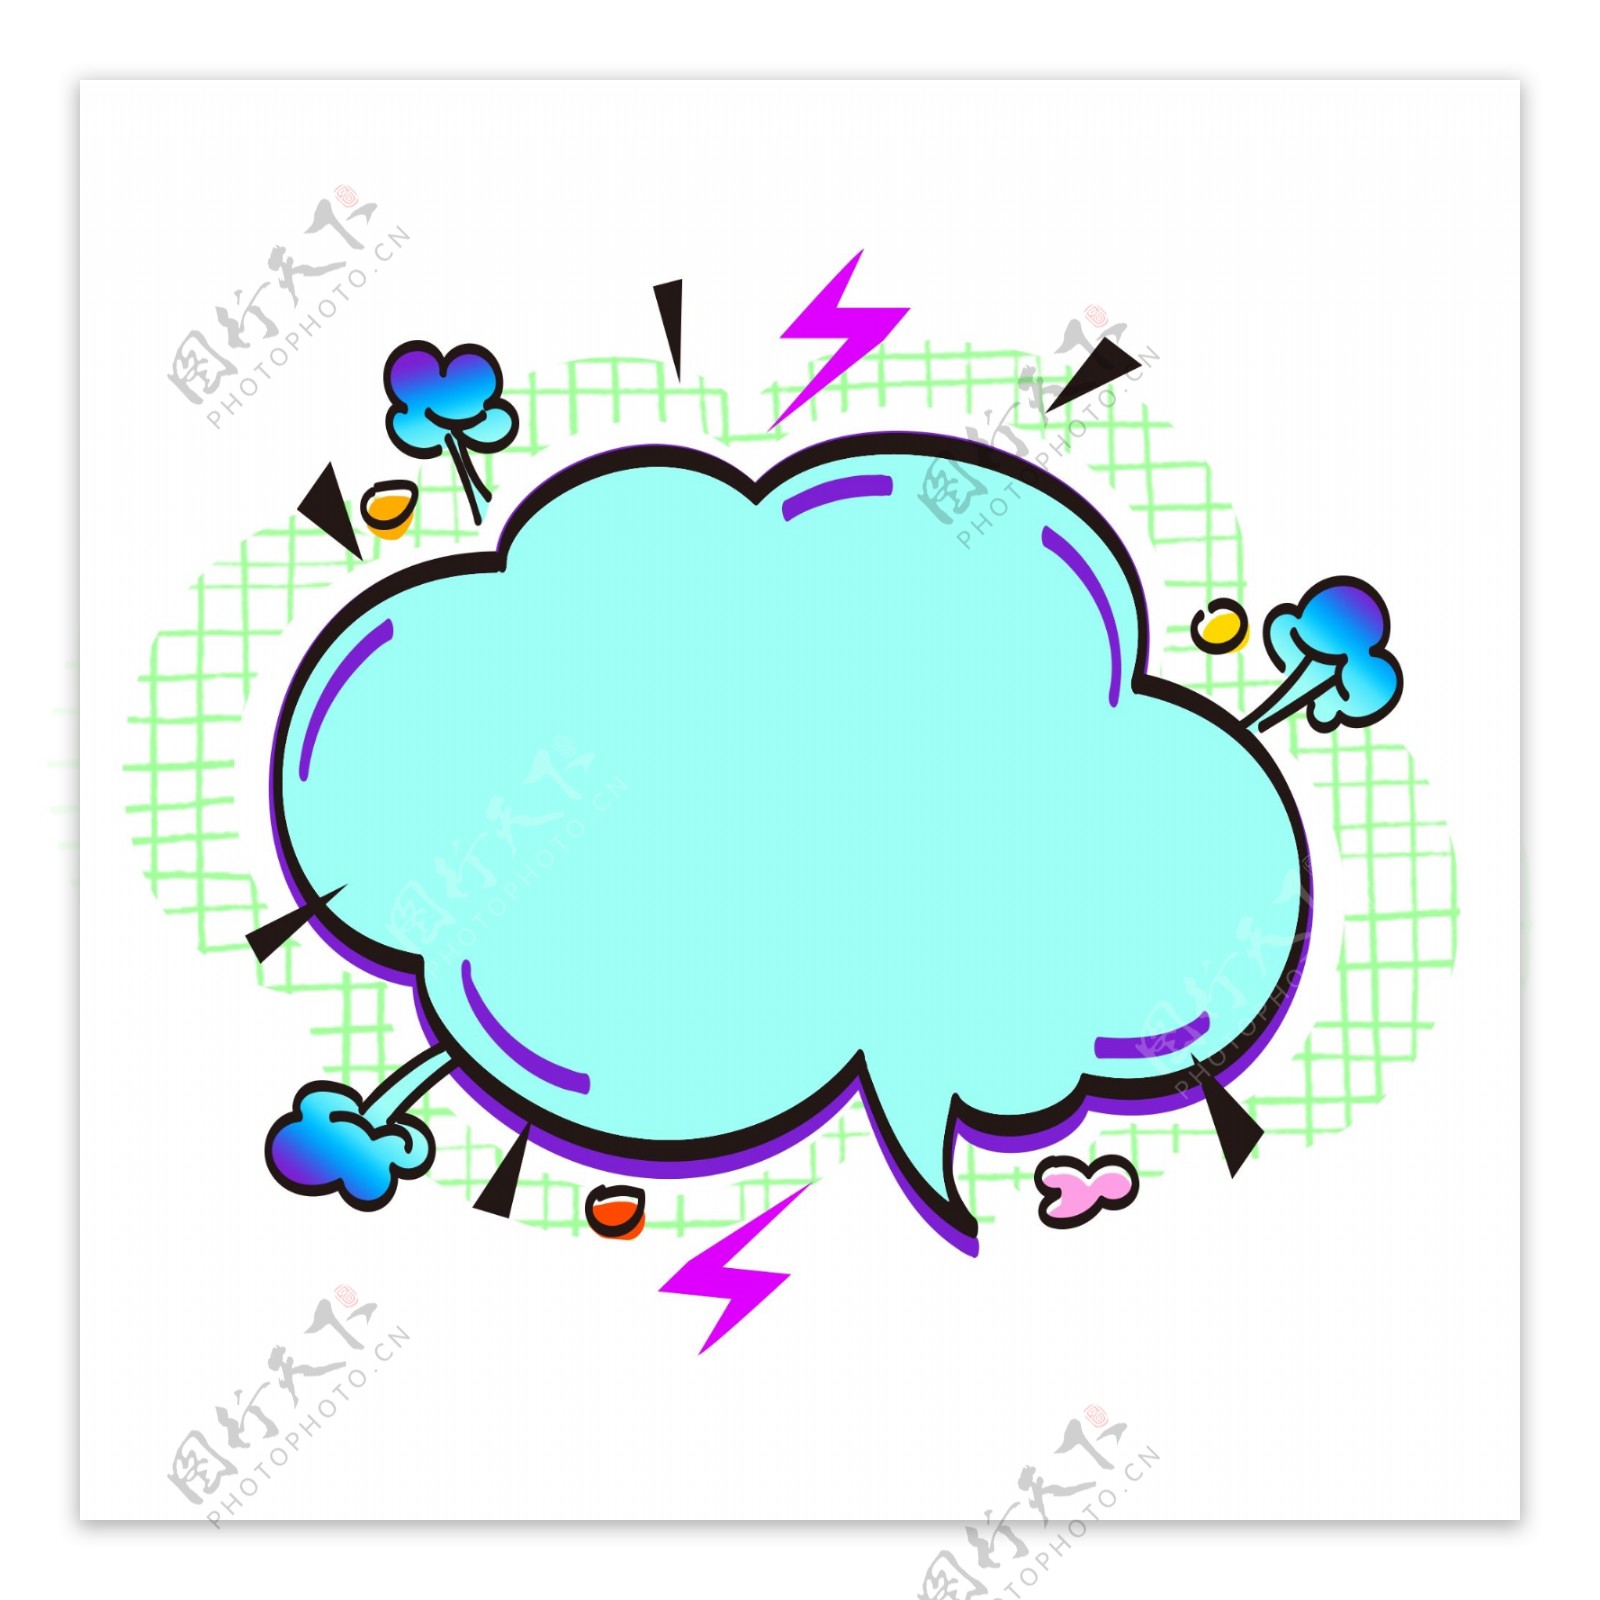 商用荧光蓝对话框边框装饰背景闪电爆炸云